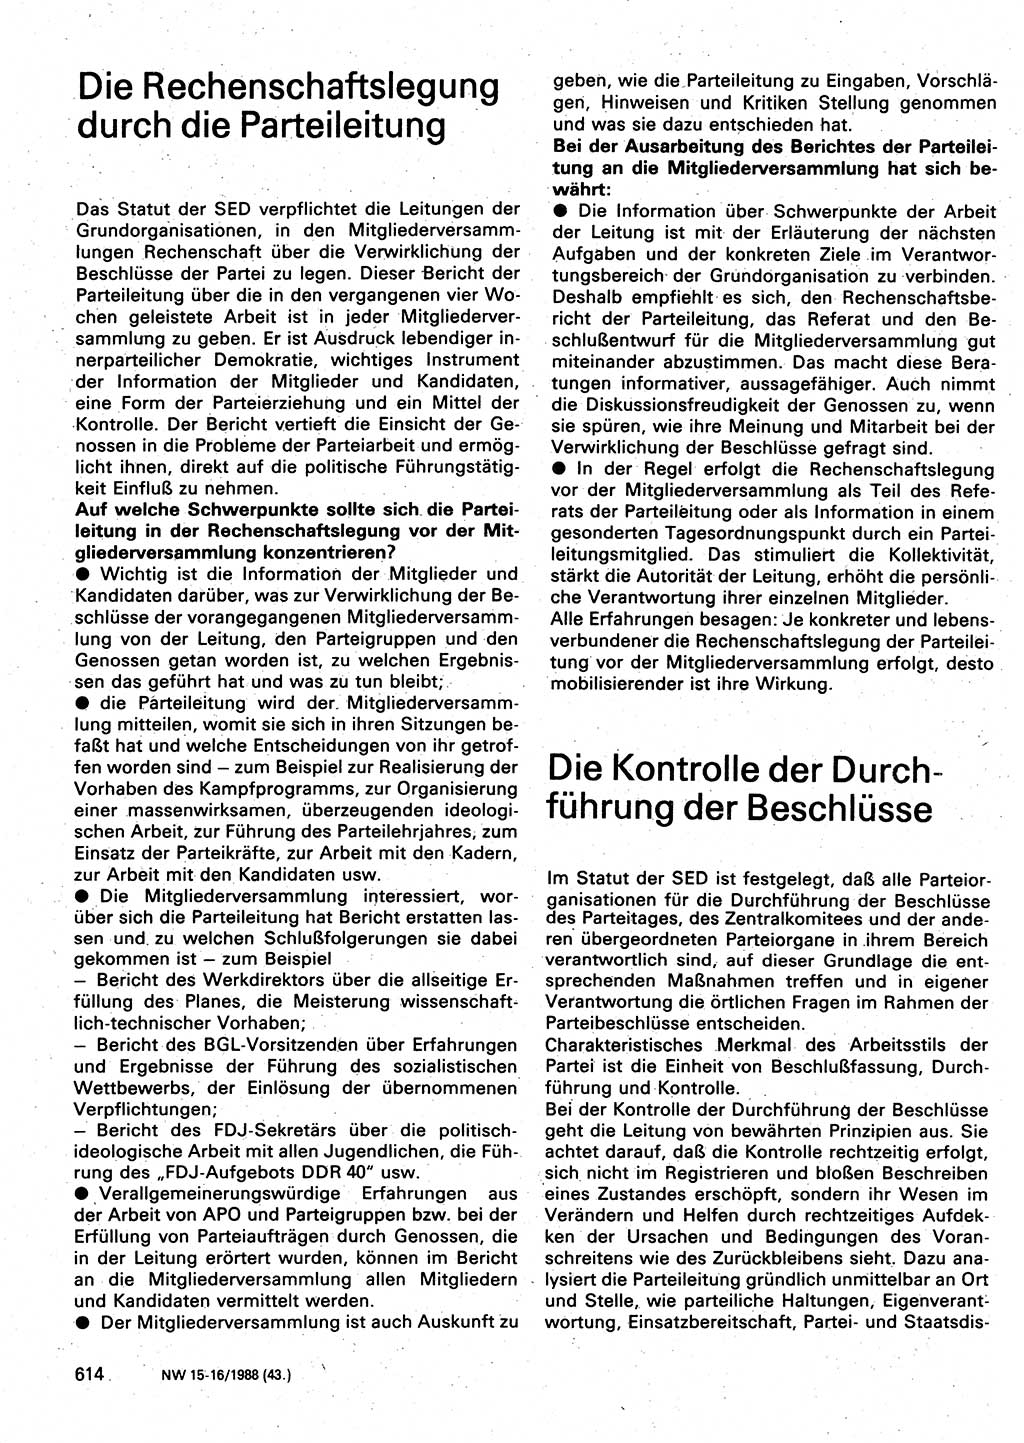 Neuer Weg (NW), Organ des Zentralkomitees (ZK) der SED (Sozialistische Einheitspartei Deutschlands) für Fragen des Parteilebens, 43. Jahrgang [Deutsche Demokratische Republik (DDR)] 1988, Seite 614 (NW ZK SED DDR 1988, S. 614)